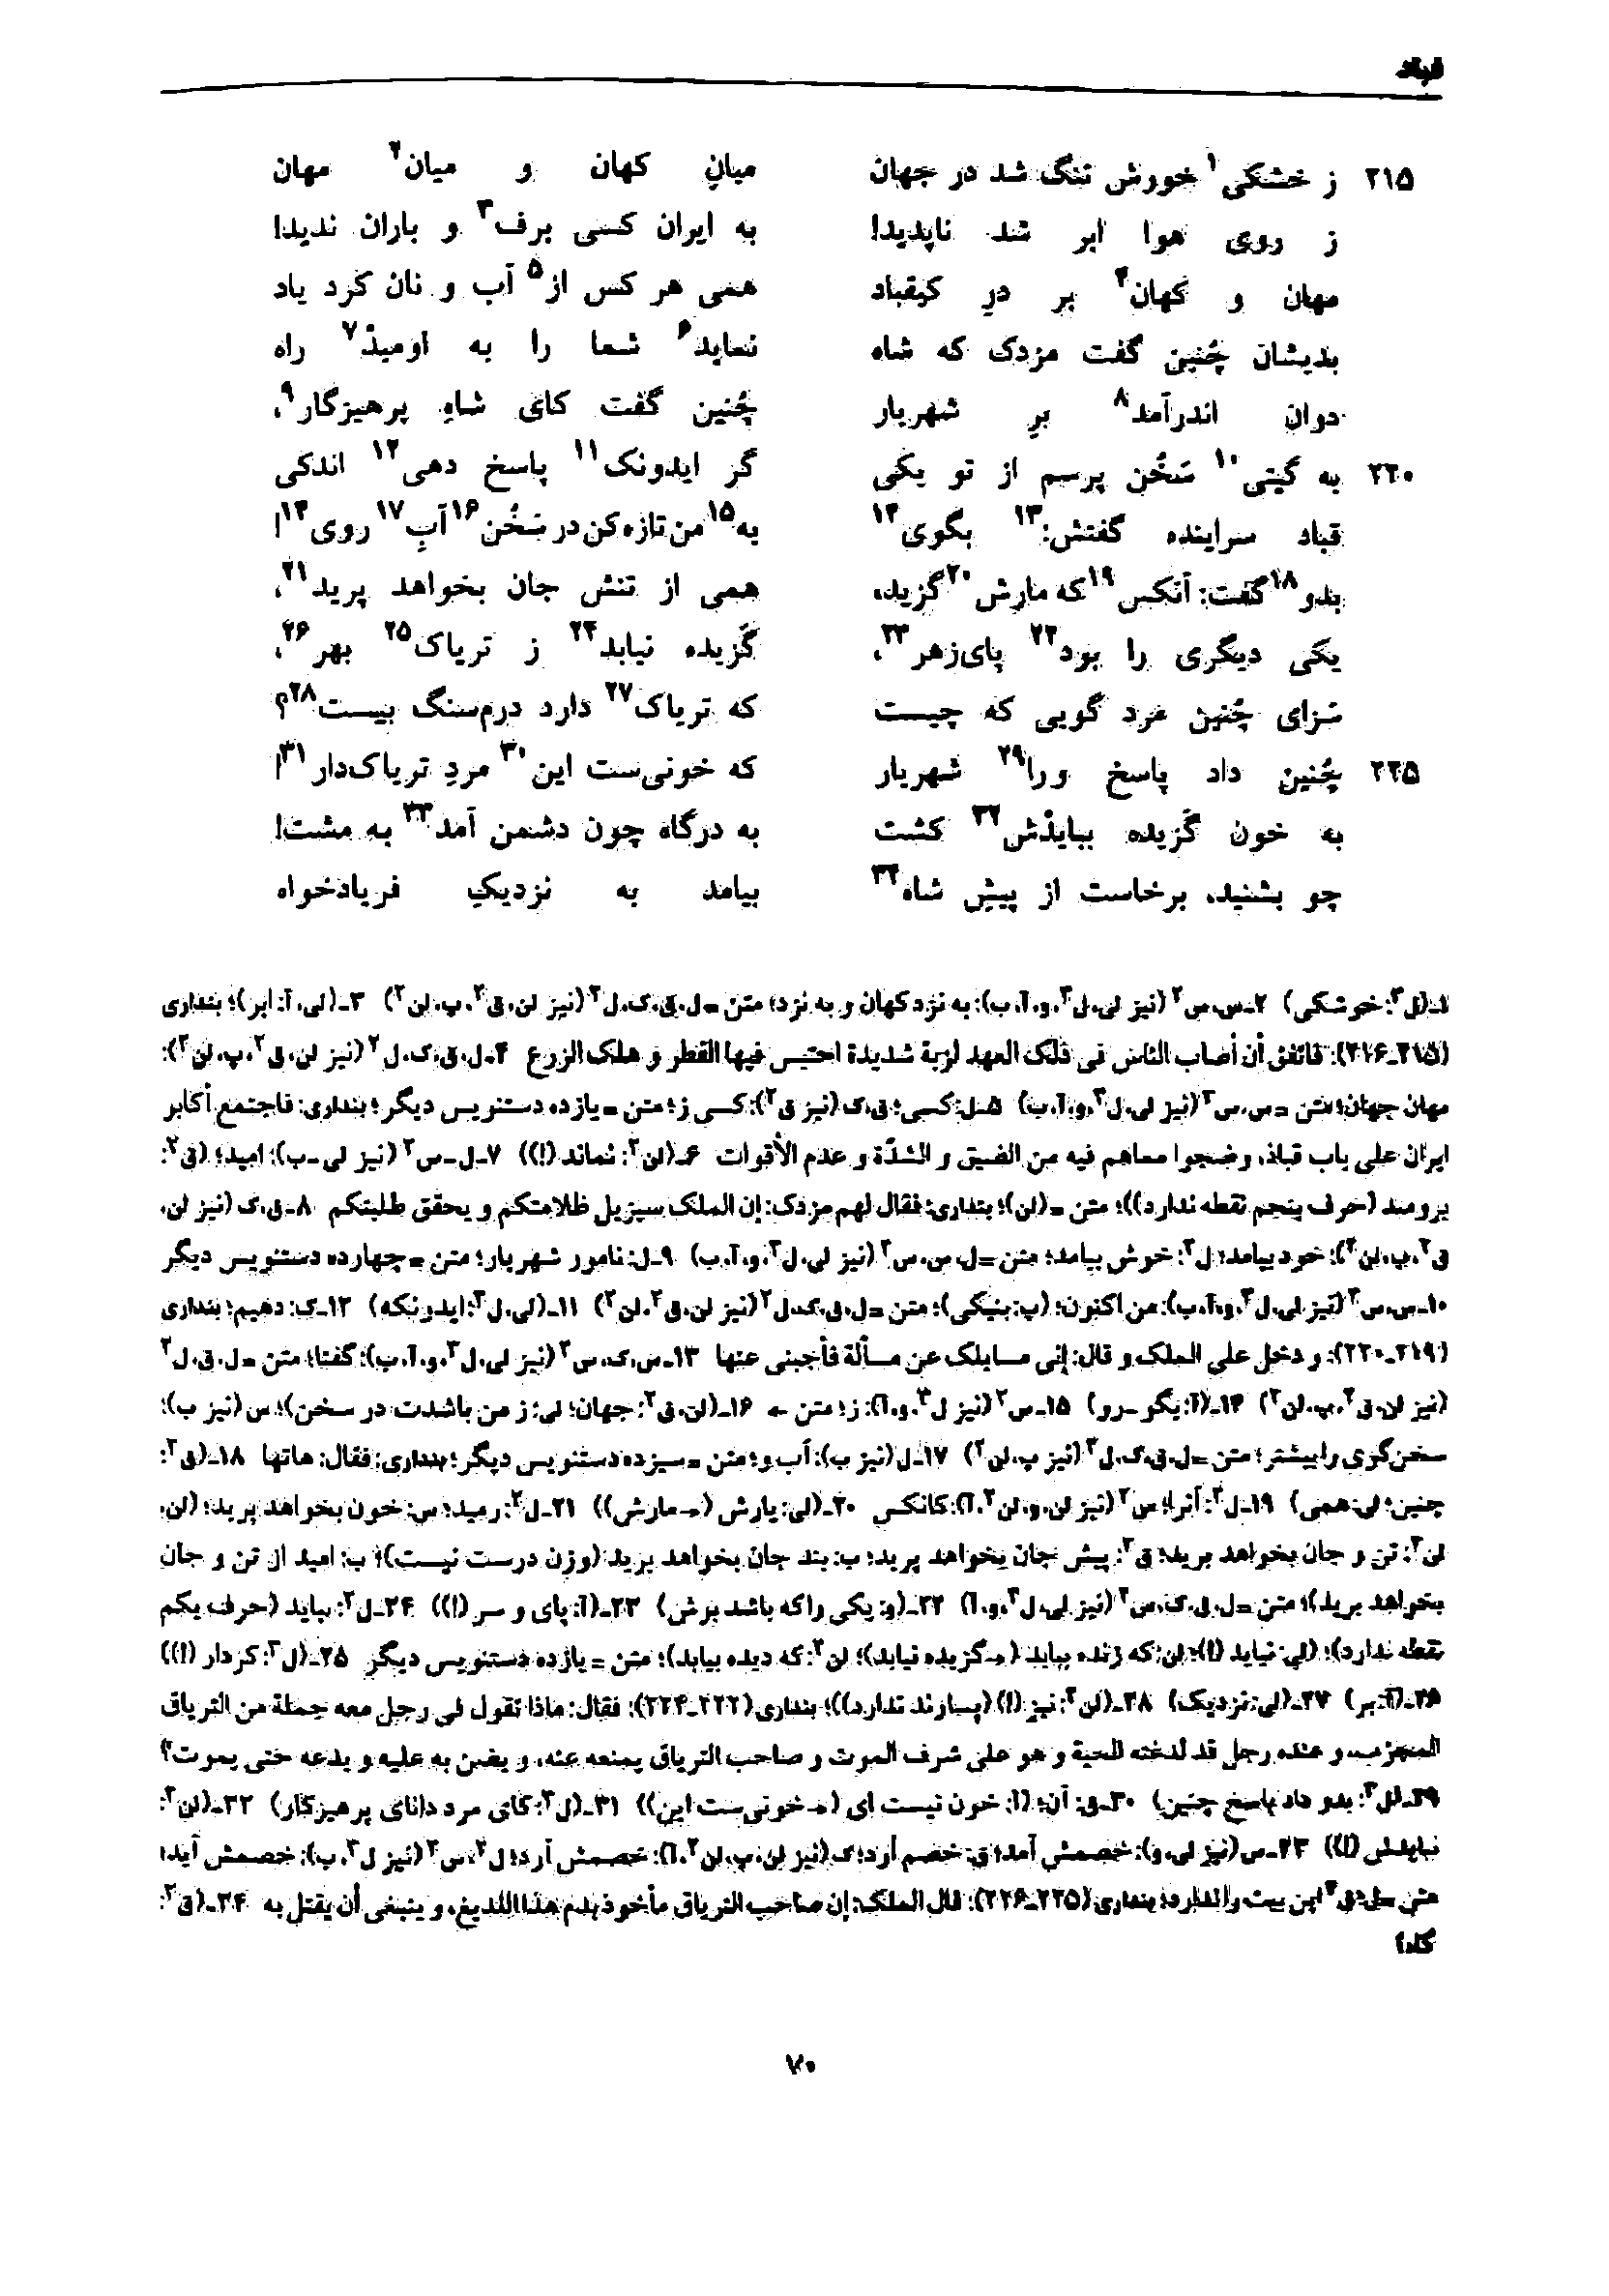 vol. 7, p. 70